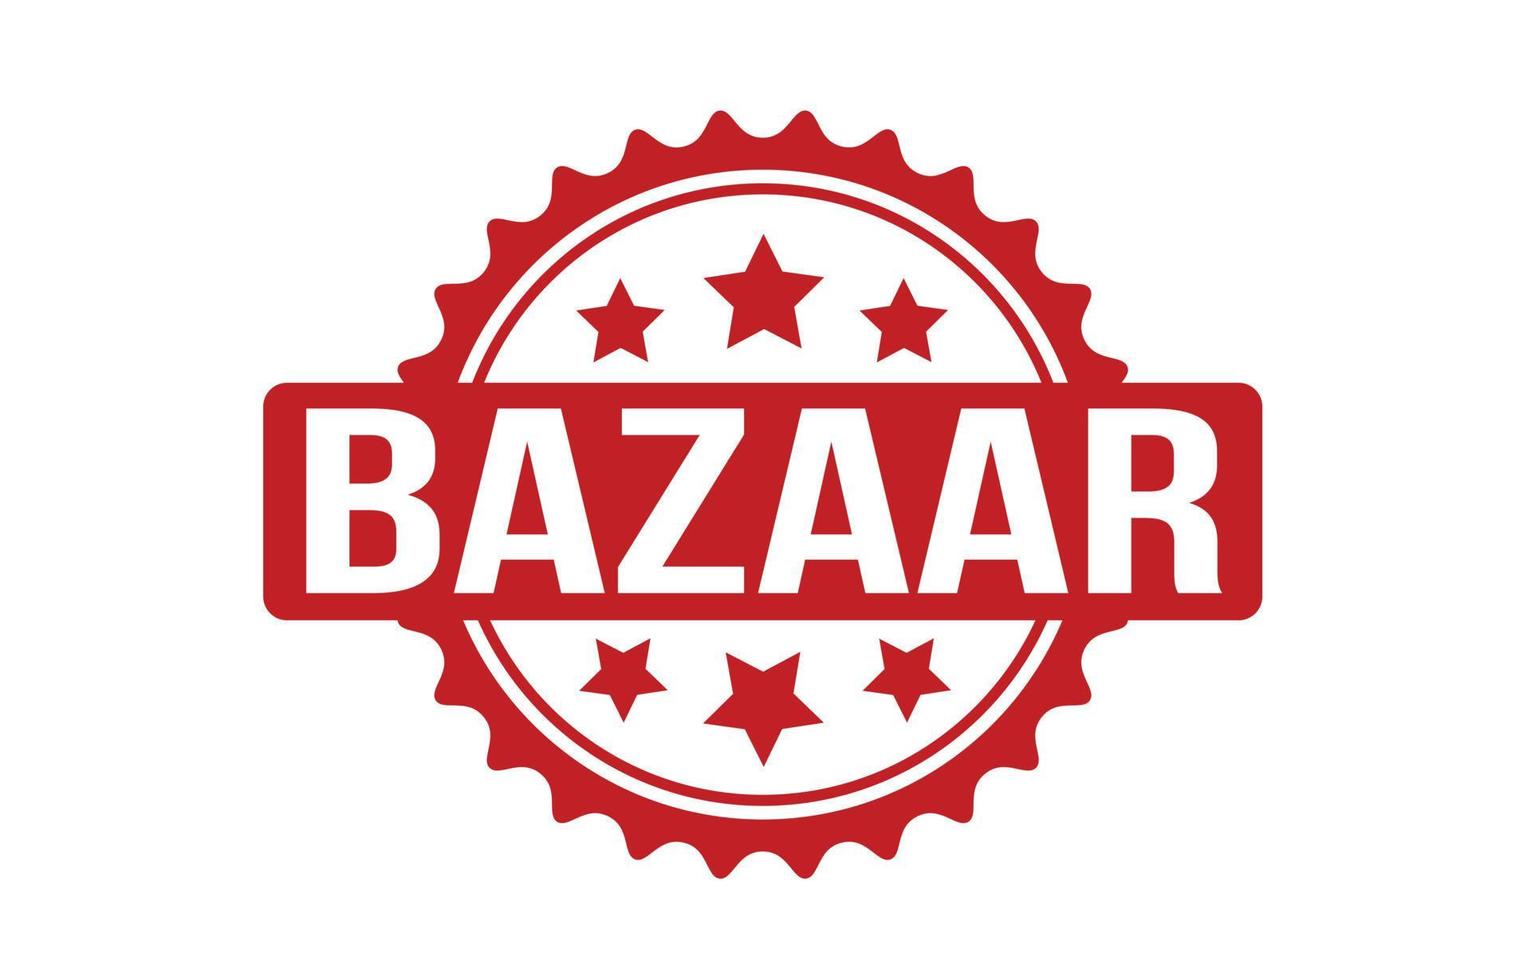 Bazaar Rubber Stamp. Red Bazaar Rubber Grunge Stamp Seal Vector Illustration - Vector